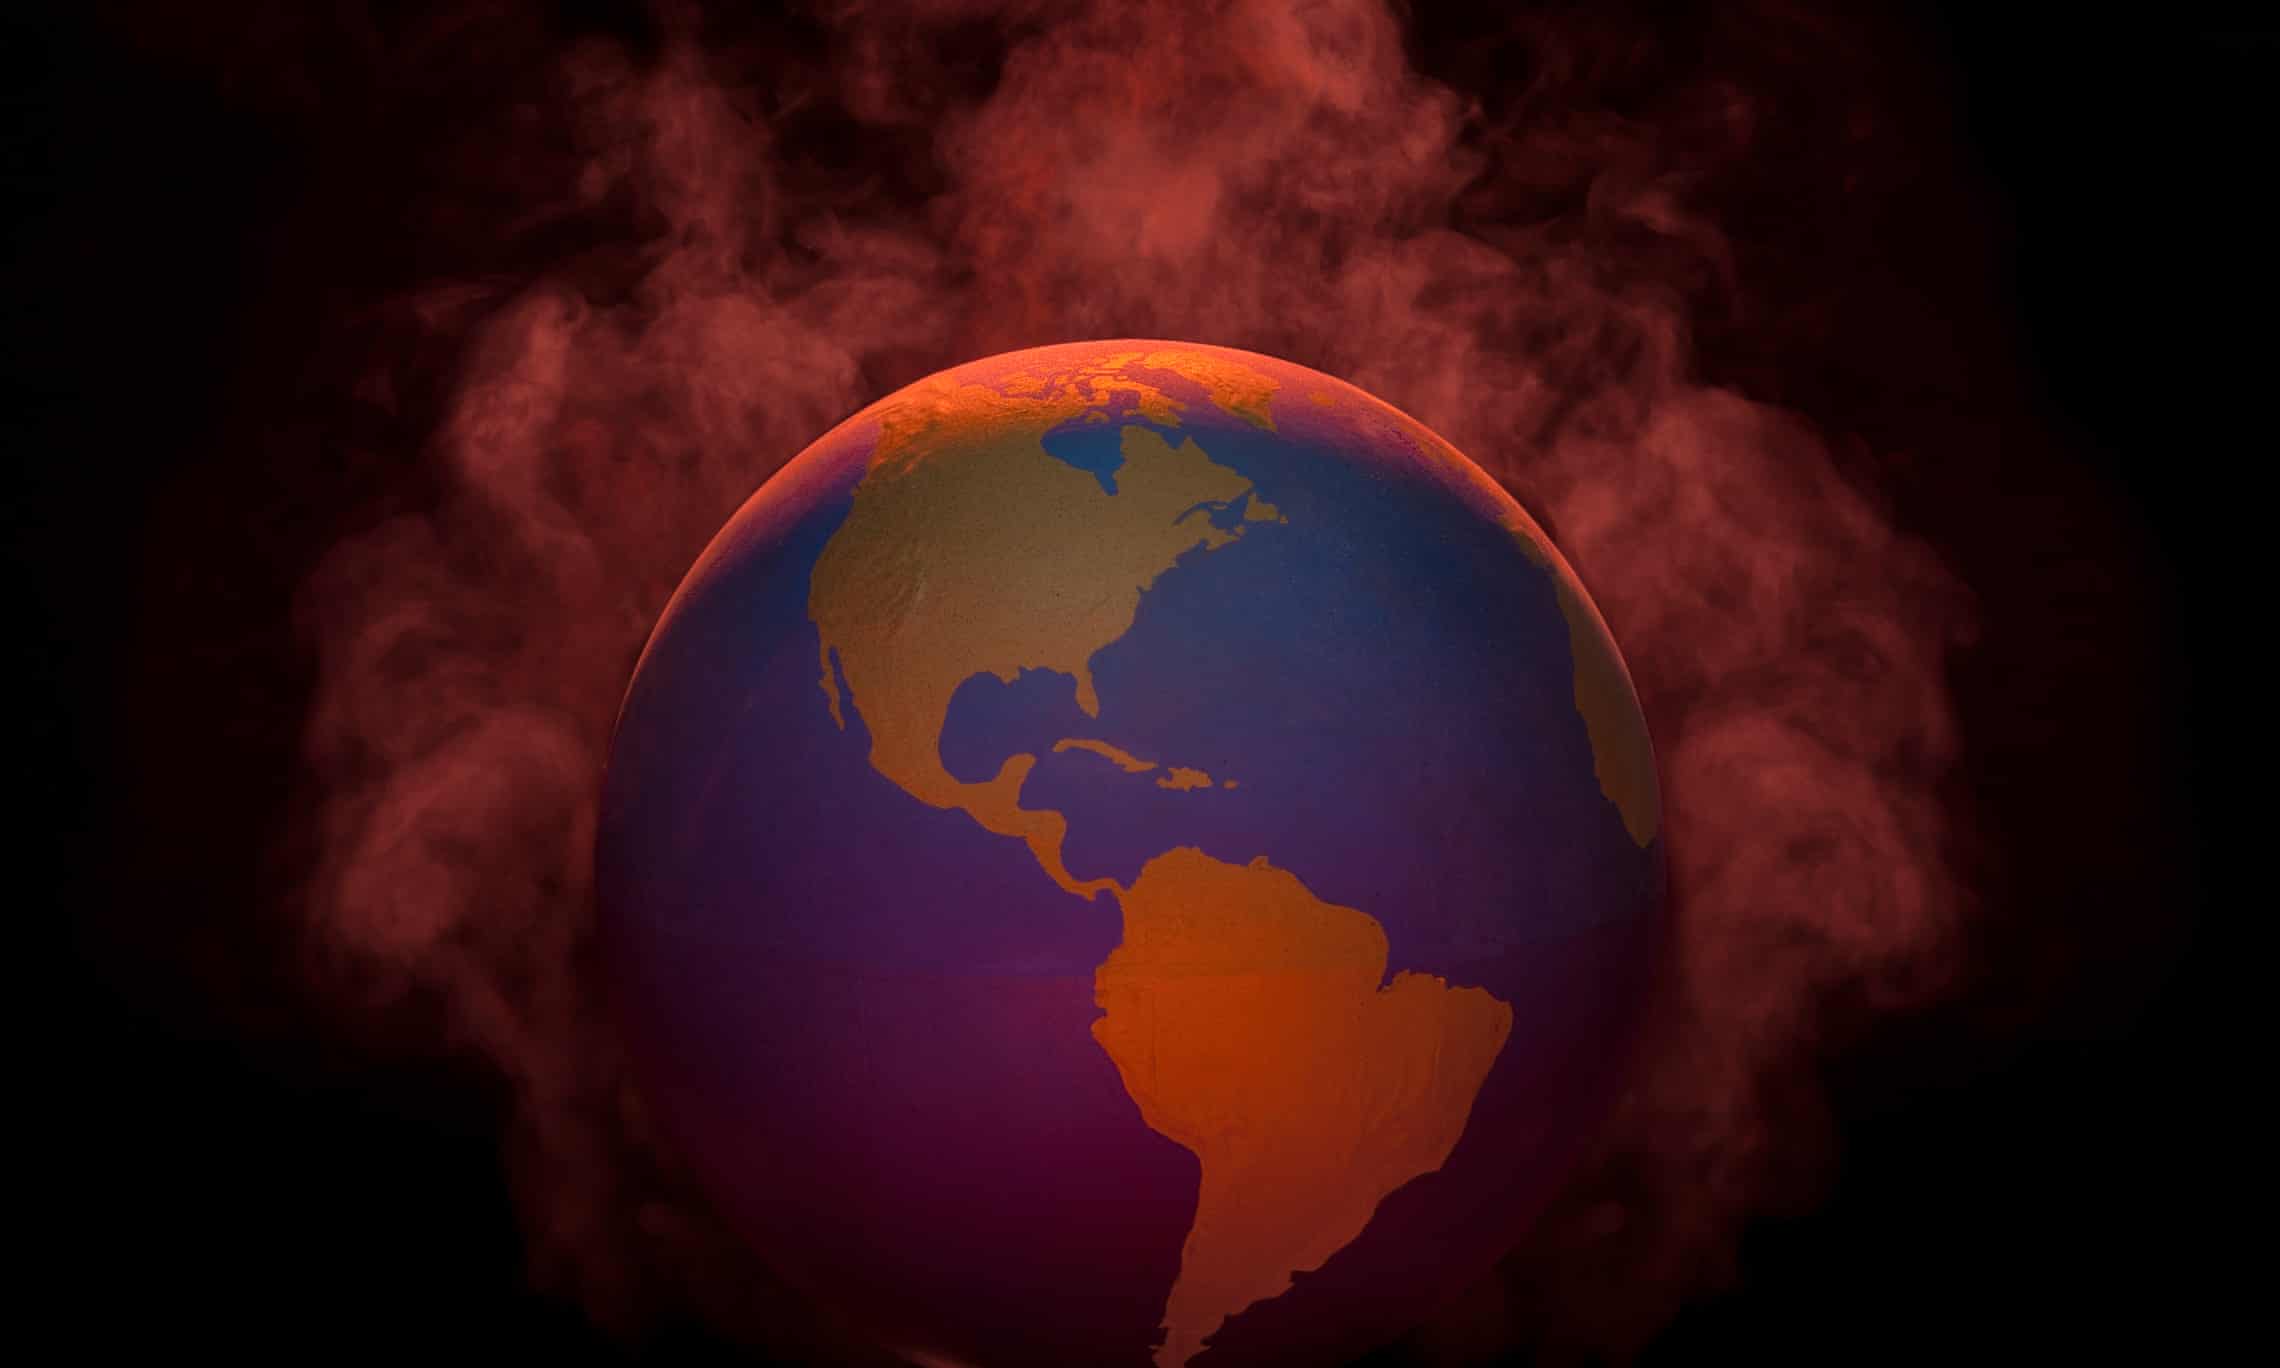 Brzy se svět změní k nepoznání: úplné zhroucení klimatu nelze zastavit, říká expert